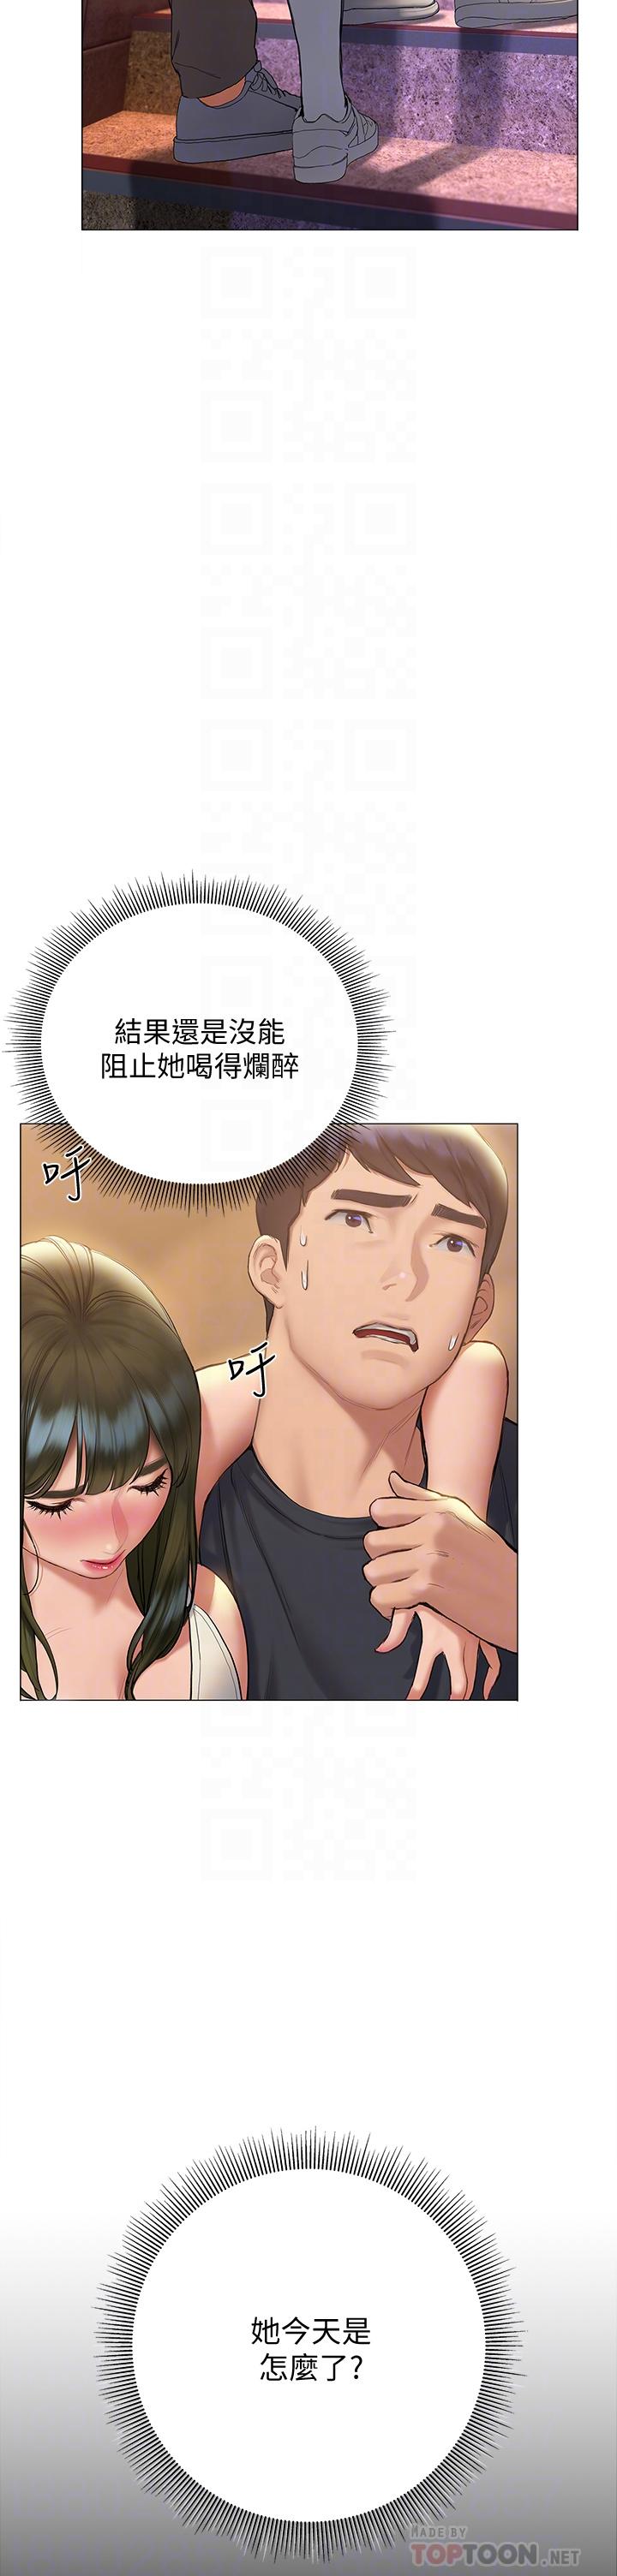 The image Understanding Of Flirting Raw - Chapter 17 - 837217 - ManhwaManga.io